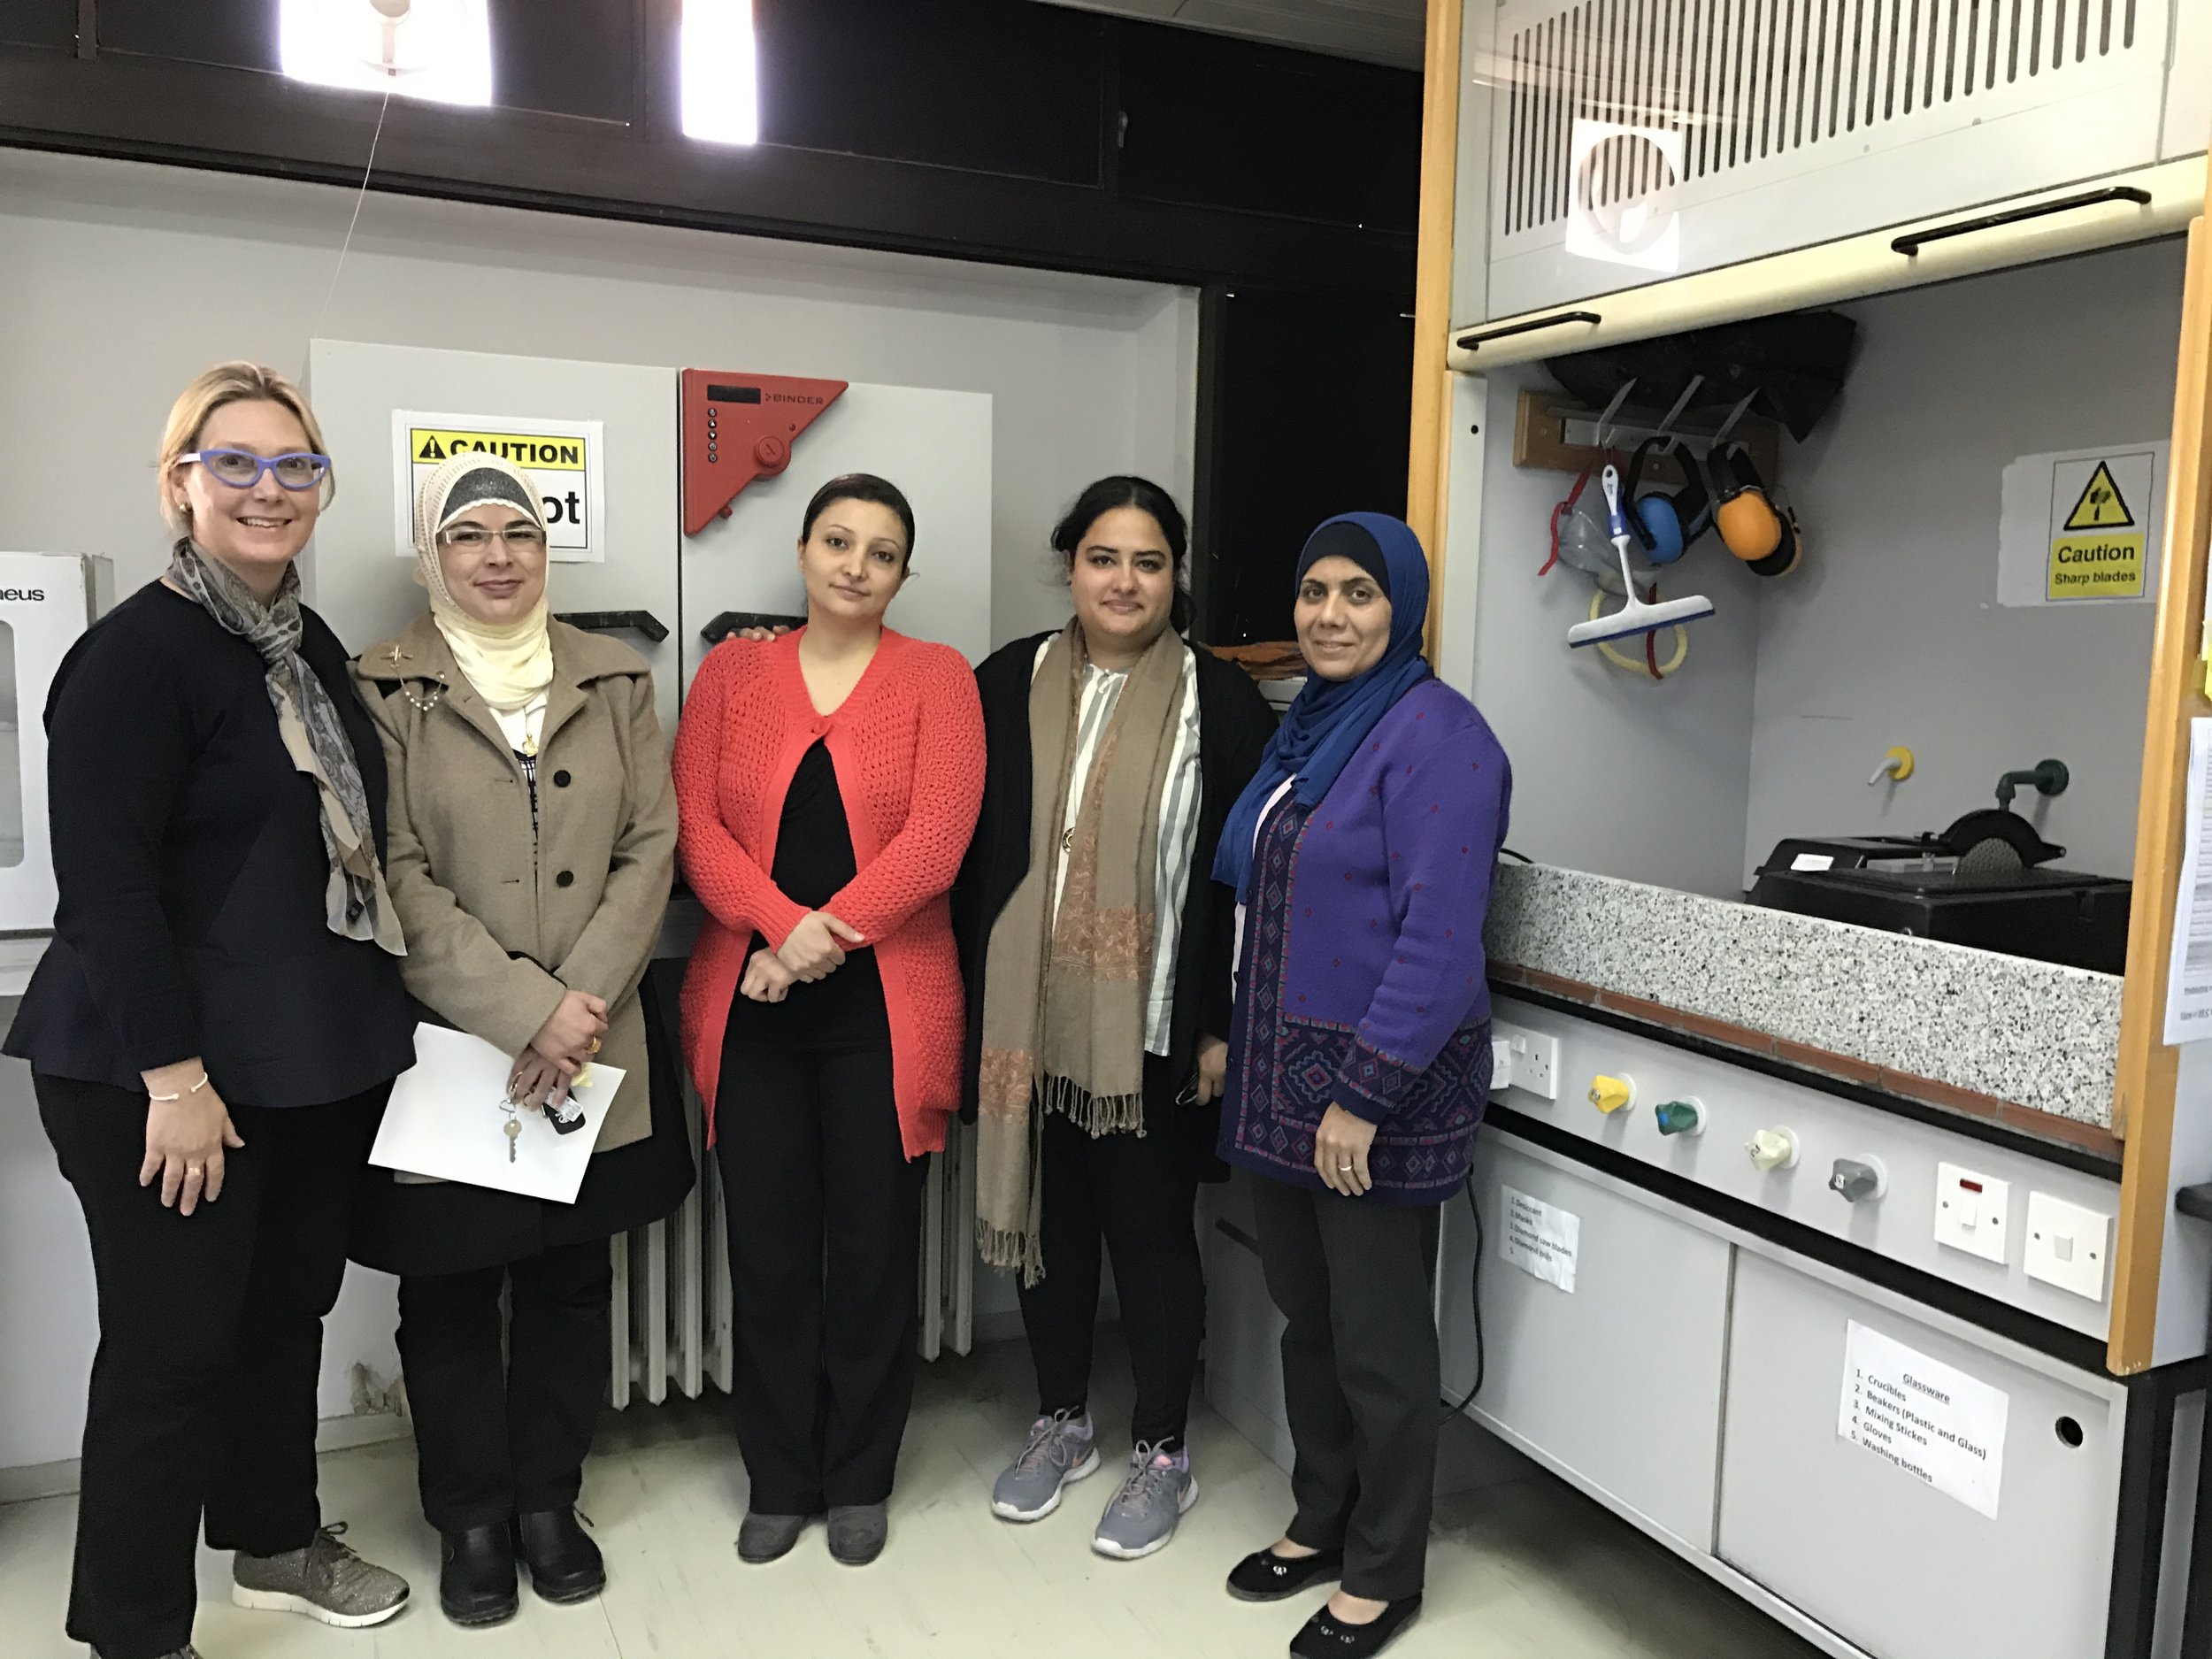  We met a woman faculty member in her lab, who is the only PhD in Aeronautical engineering in Jordan. 